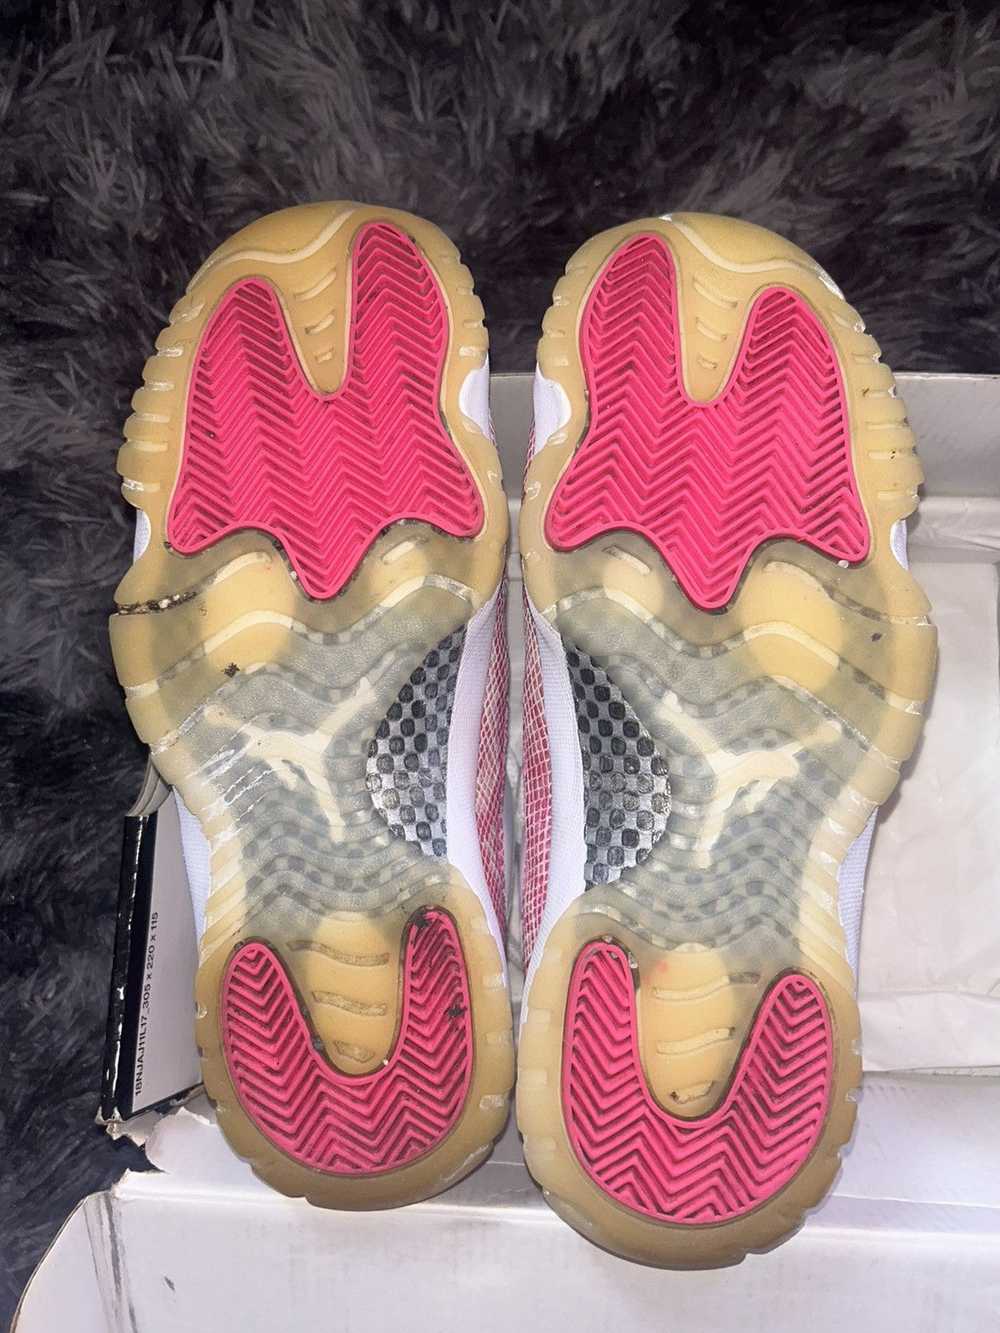 Jordan Brand Pink Snake Skin 11s - image 5